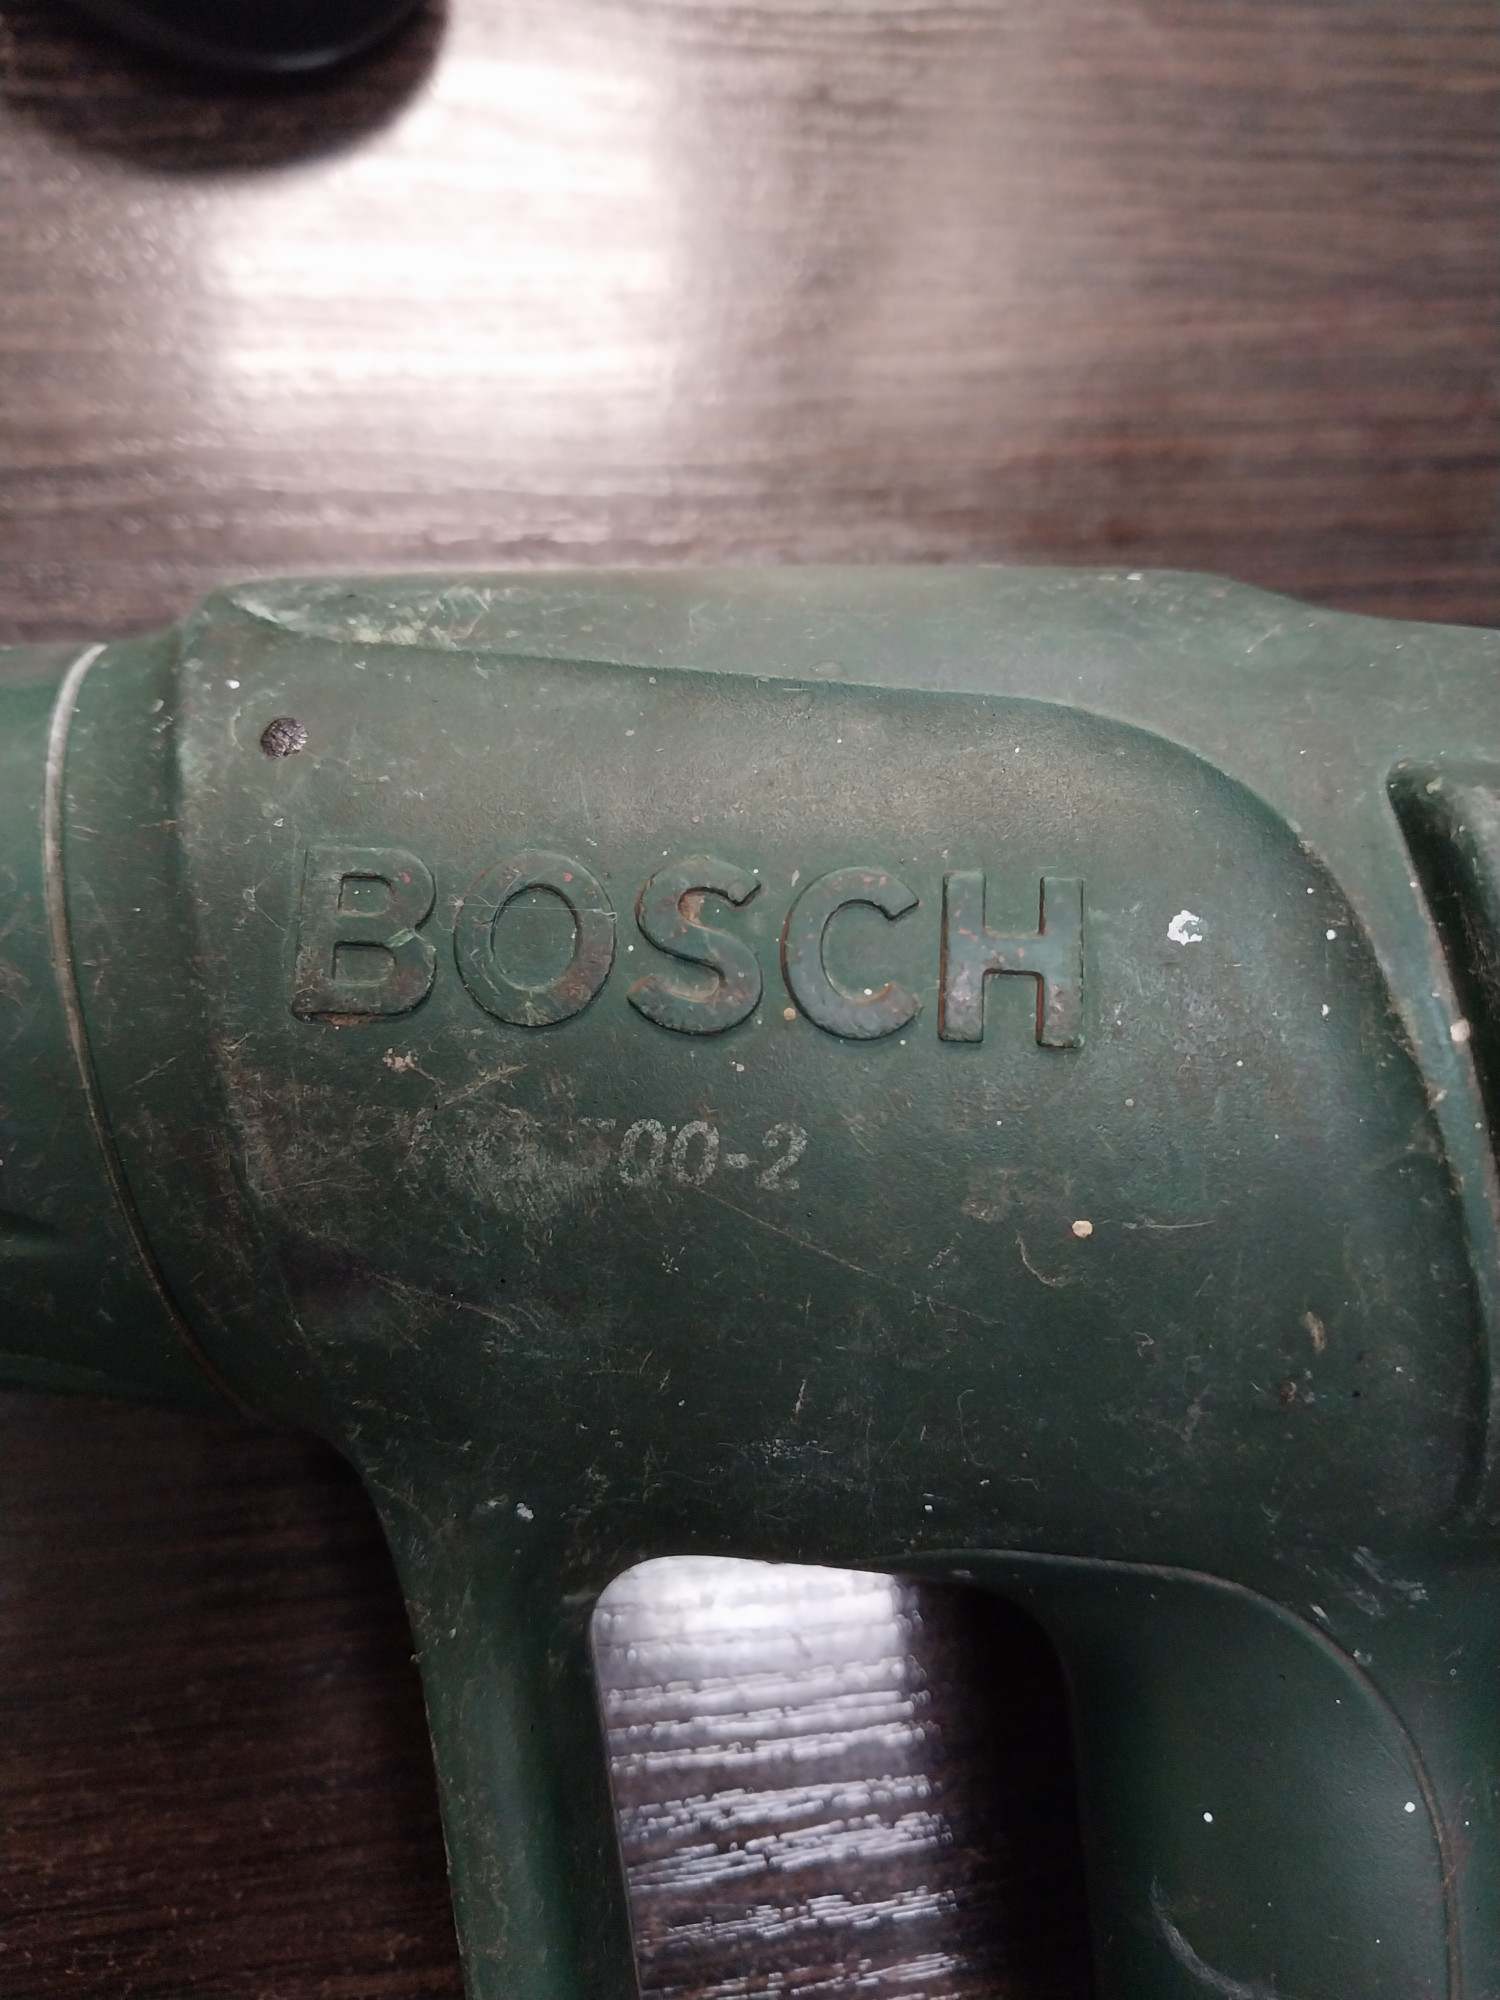 Фен будівельний Bosch PHG 500-2 2